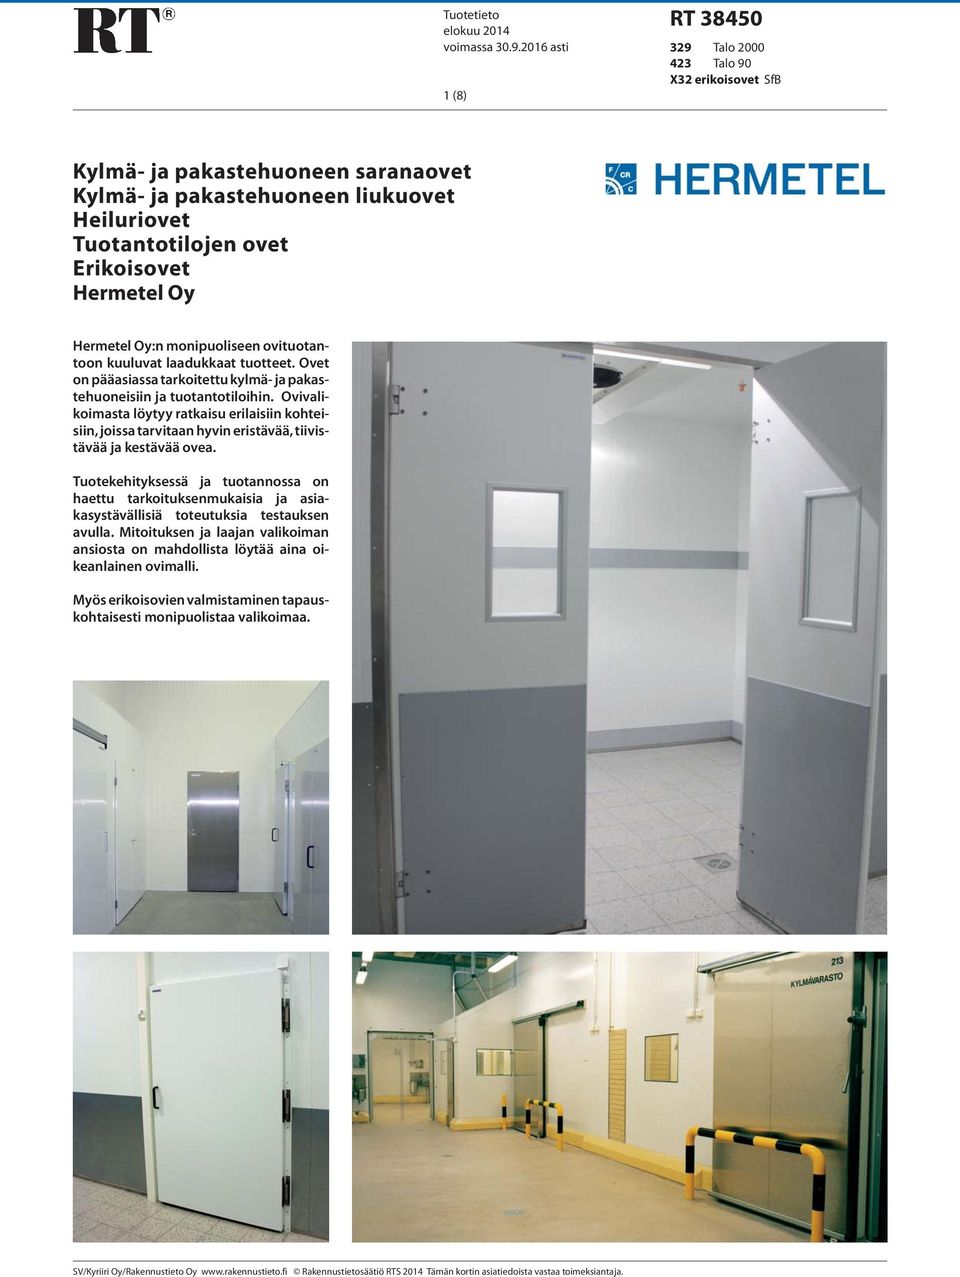 Hermetel Oy:n monipuoliseen ovituotantoon kuuluvat laadukkaat tuotteet. Ovet on pääasiassa tarkoitettu kylmä- ja pakastehuoneisiin ja tuotantotiloihin.